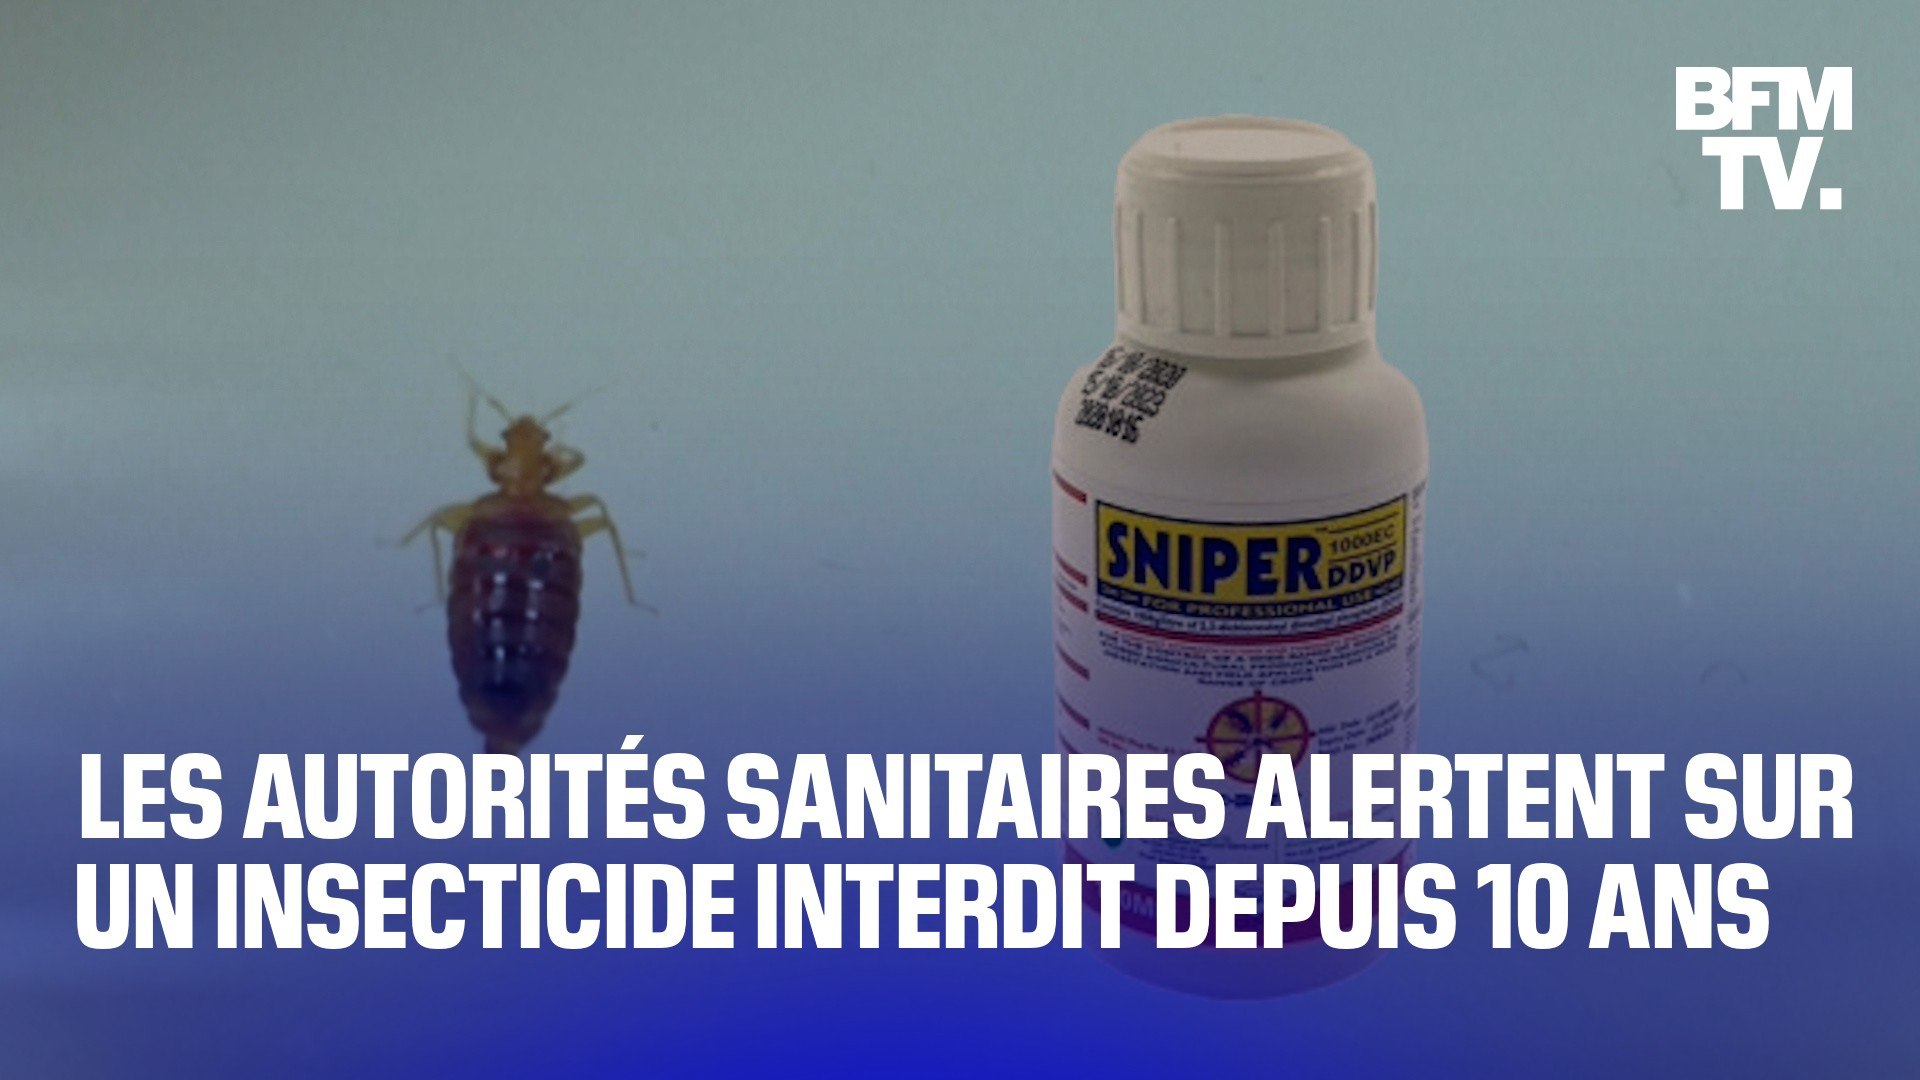 Punaises de lit: l'Anses alerte sur l'insecticide Sniper, responsable de  plus de 200 intoxications depuis 2018 - Vidéo Dailymotion